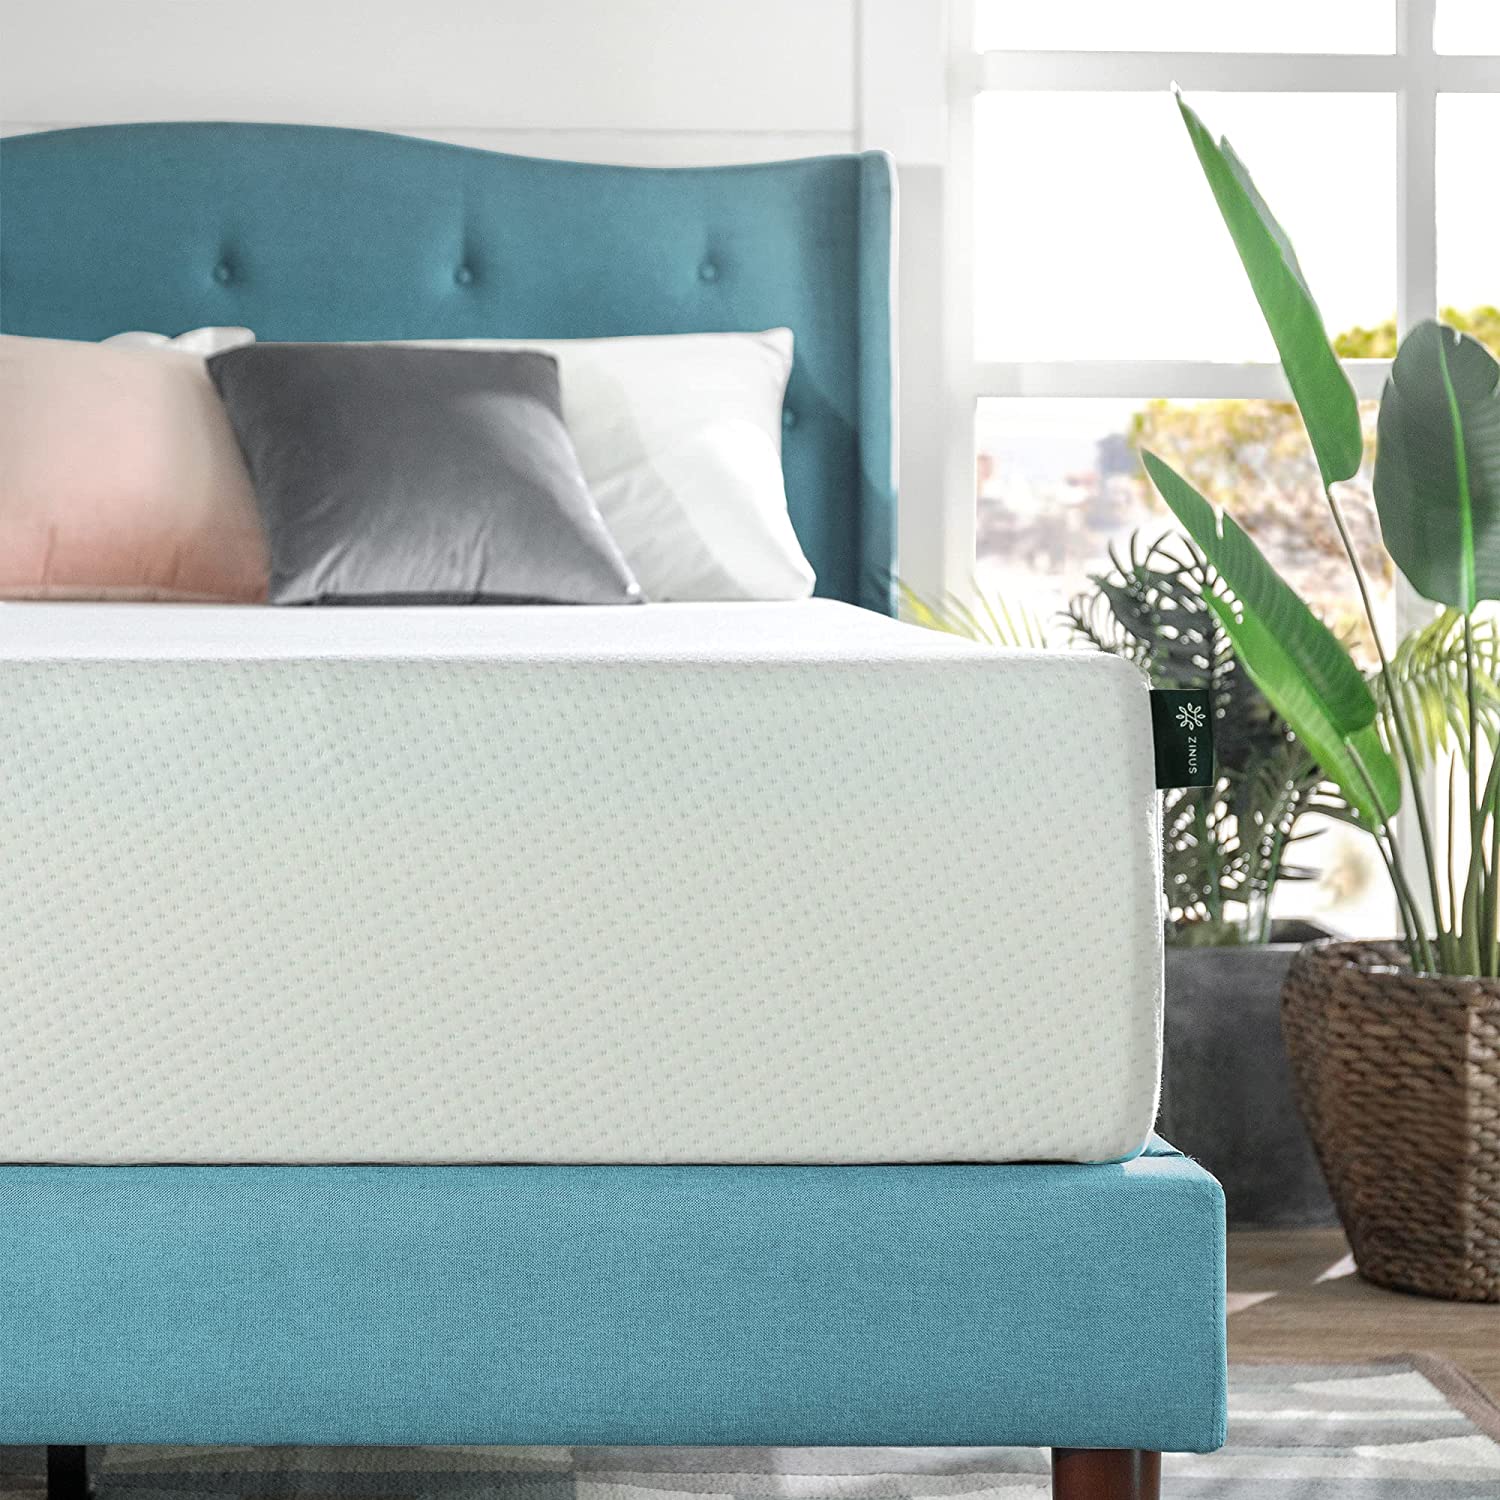 best airbnb mattress